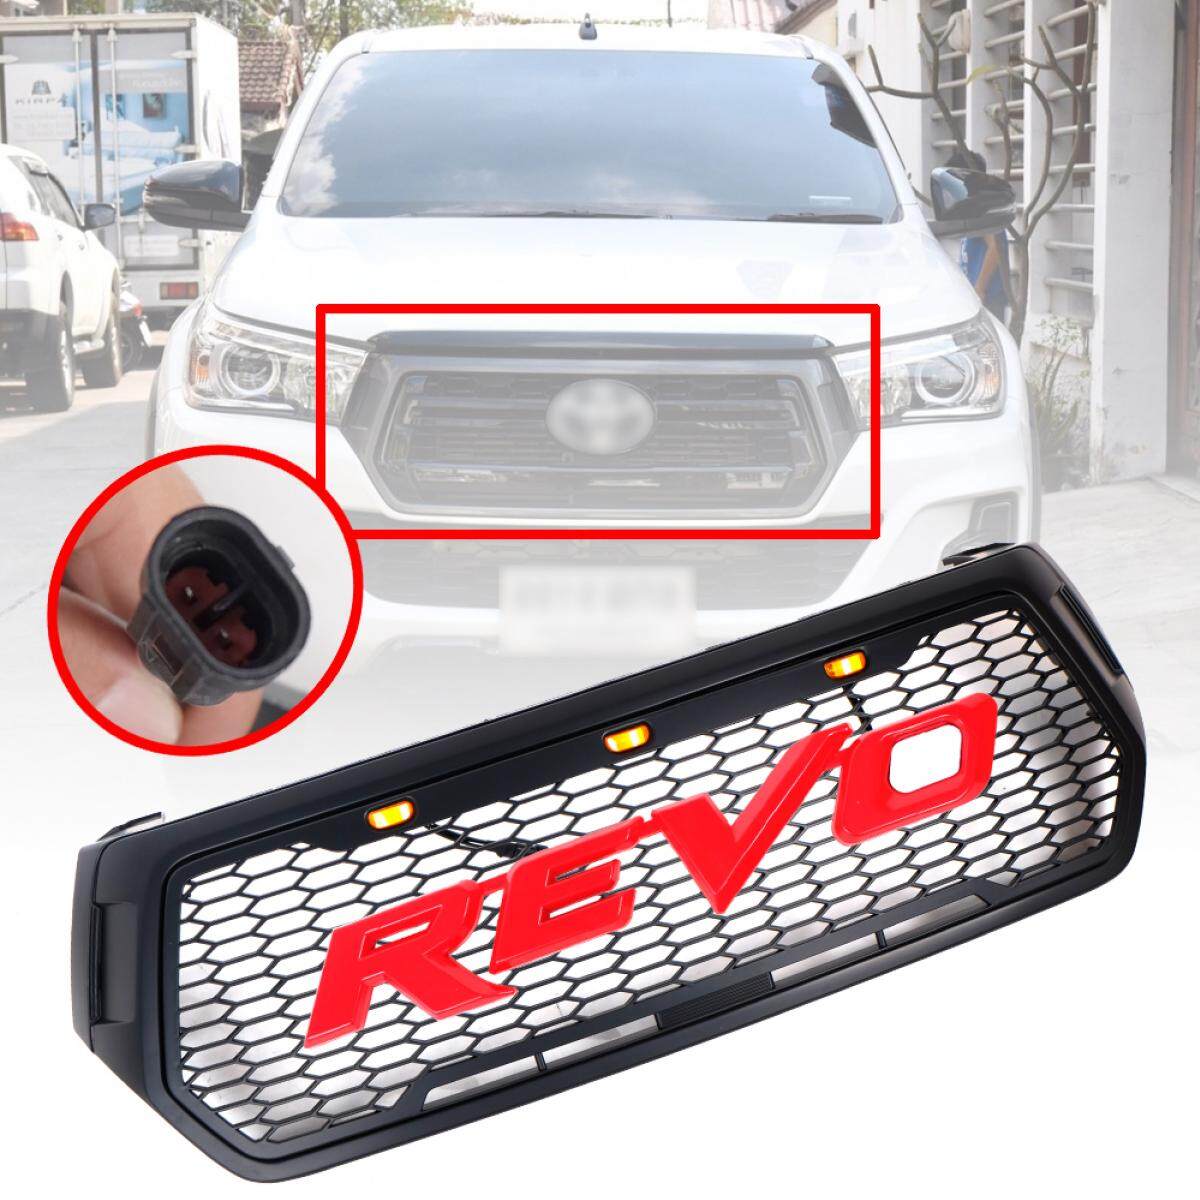 กระจังหน้า รีโว revo รุ่น rocco มี LED หน้ากระจังรถ โลโก้แดง รุ่น โตโยต้า TOYOTA HILUX REVO ปี 2018-2019